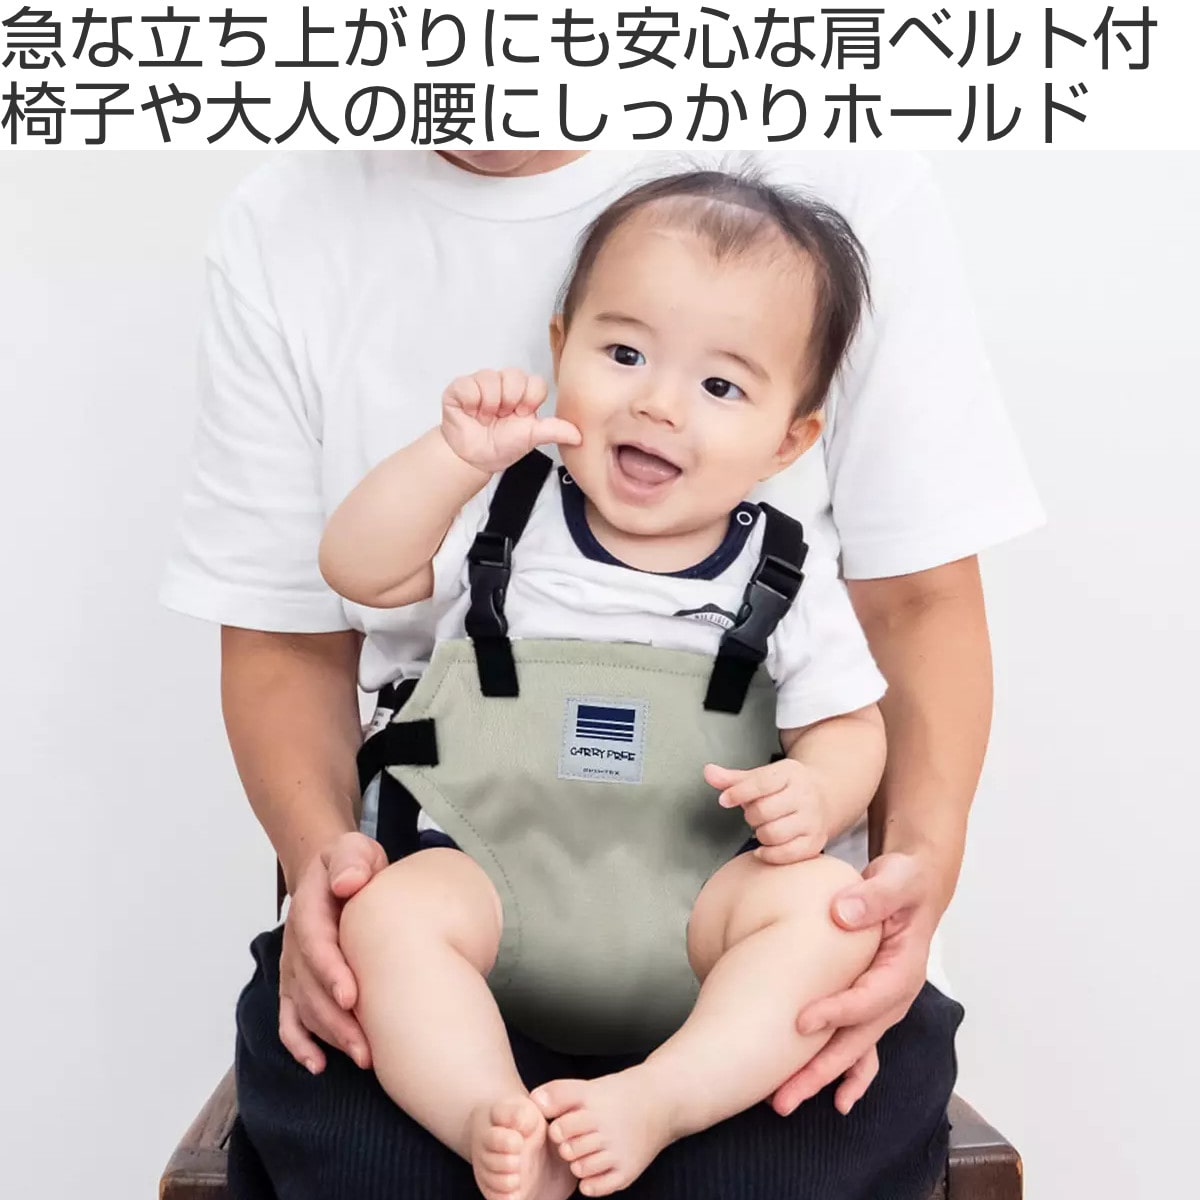 チェアベルト ホールド キャリフリー 日本正規品 赤ちゃん 椅子 日本製